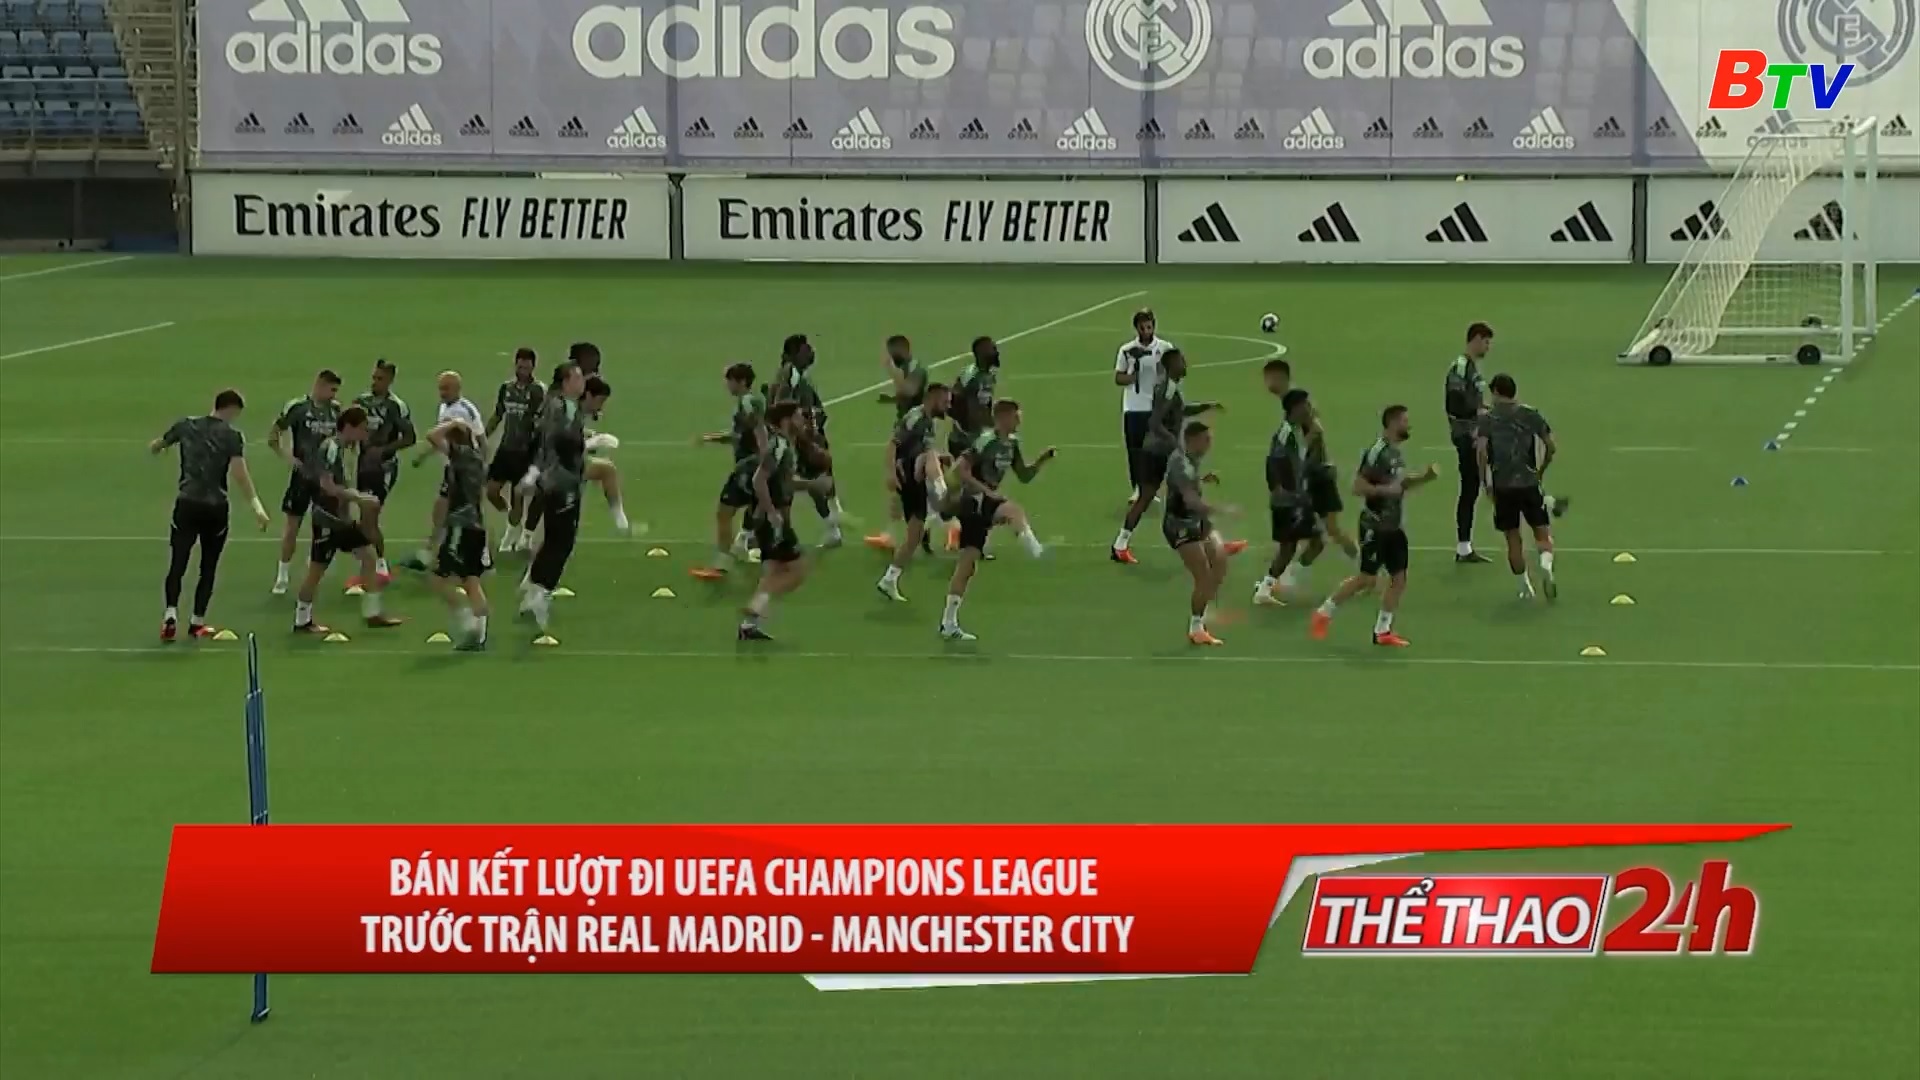 Bán kết lược đi UEFA Champions League – Trước trận Real Madrid – Manchester City